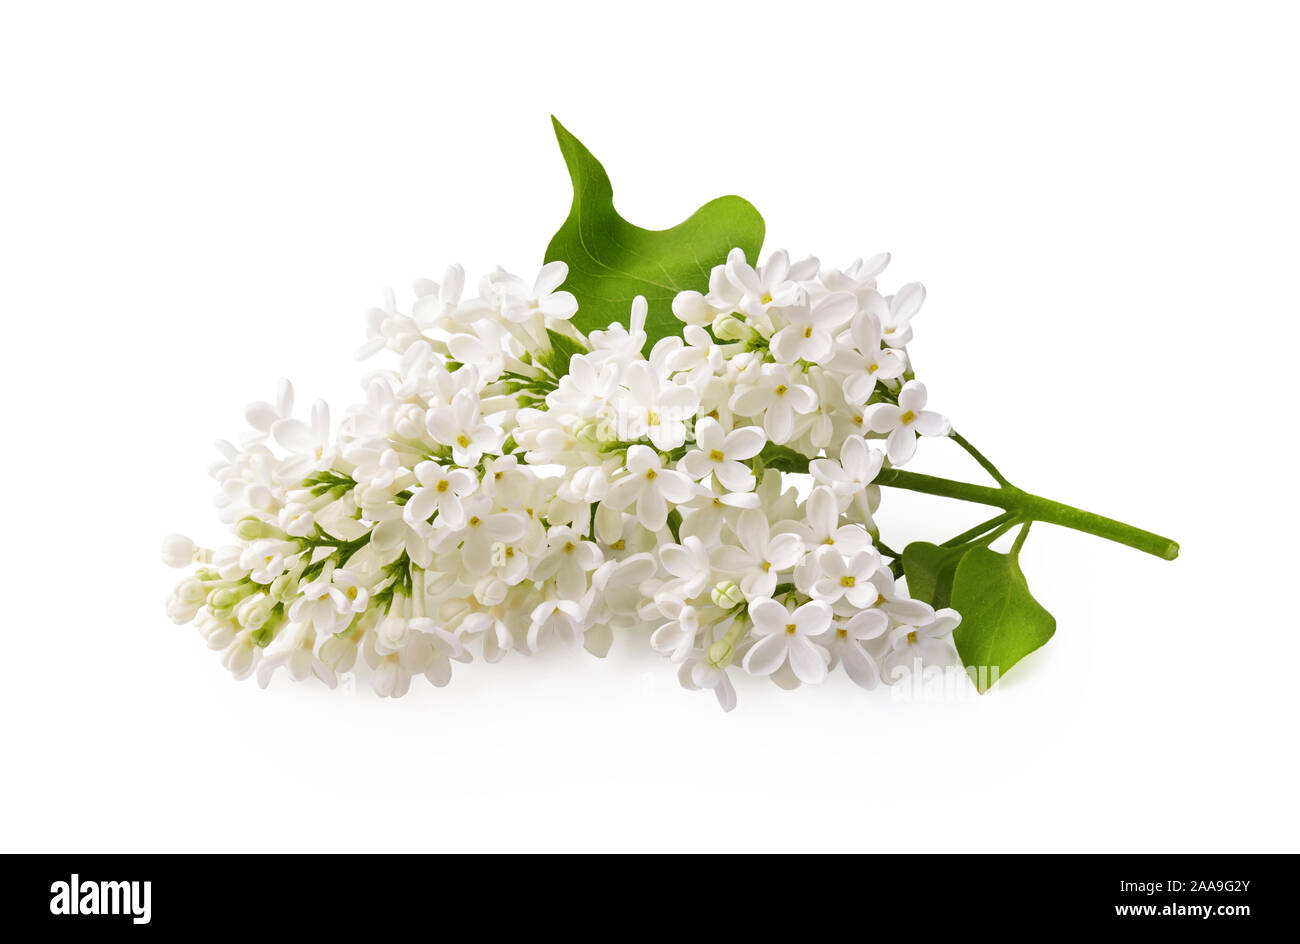 Zweig der weiße Flieder Blumen mit grünen Blättern auf weißem Hintergrund. Stockfoto